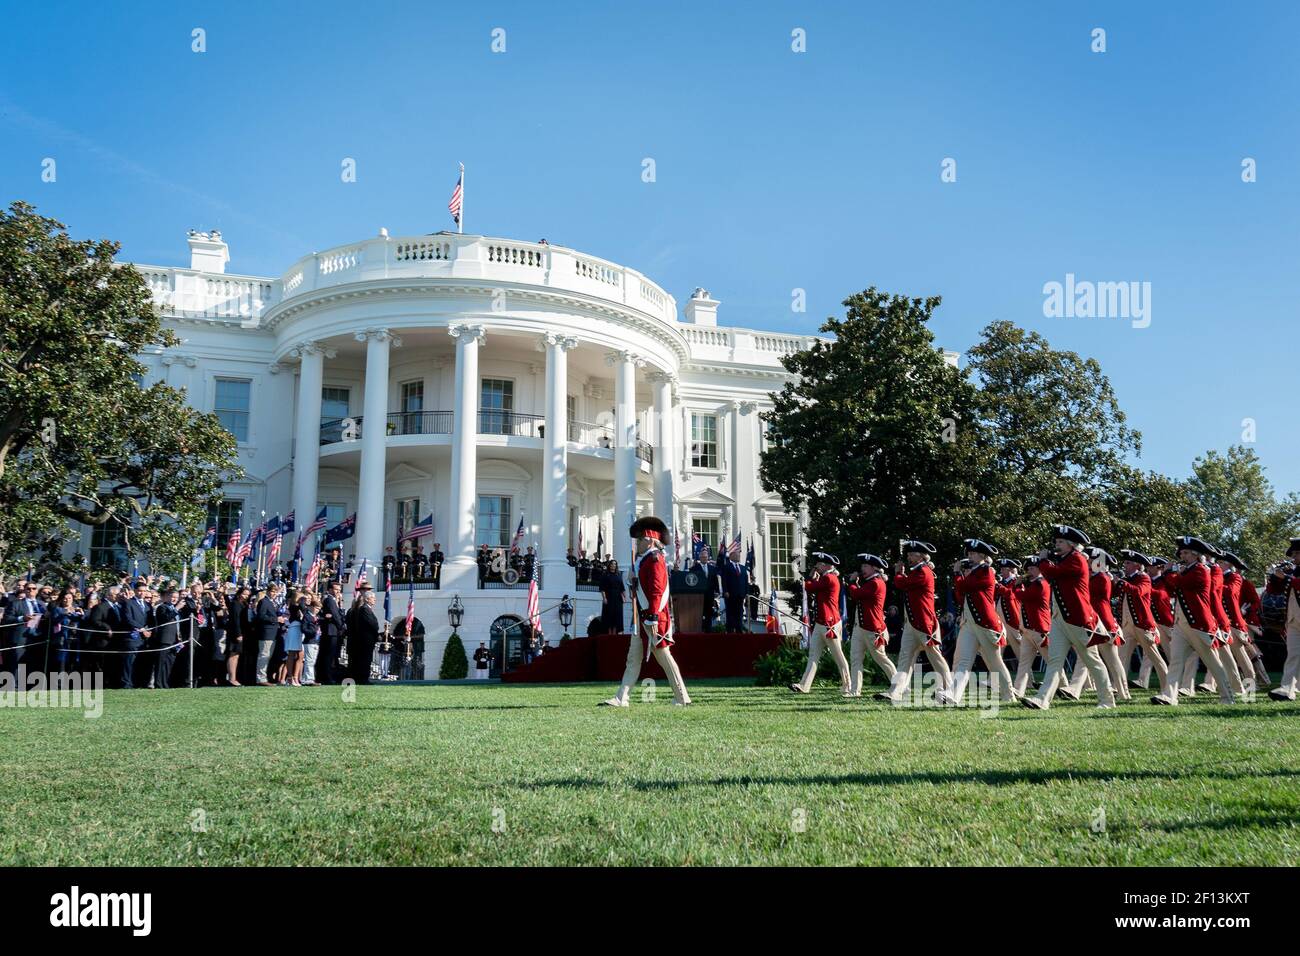 Il presidente Donald Trump e il primo ministro australiano Scott Morrison esaminano il Fife dell'esercito degli Stati Uniti e il corpo del tamburo durante la visita di Stato venerdì 20 2019 settembre sul prato meridionale della Casa Bianca. Foto Stock